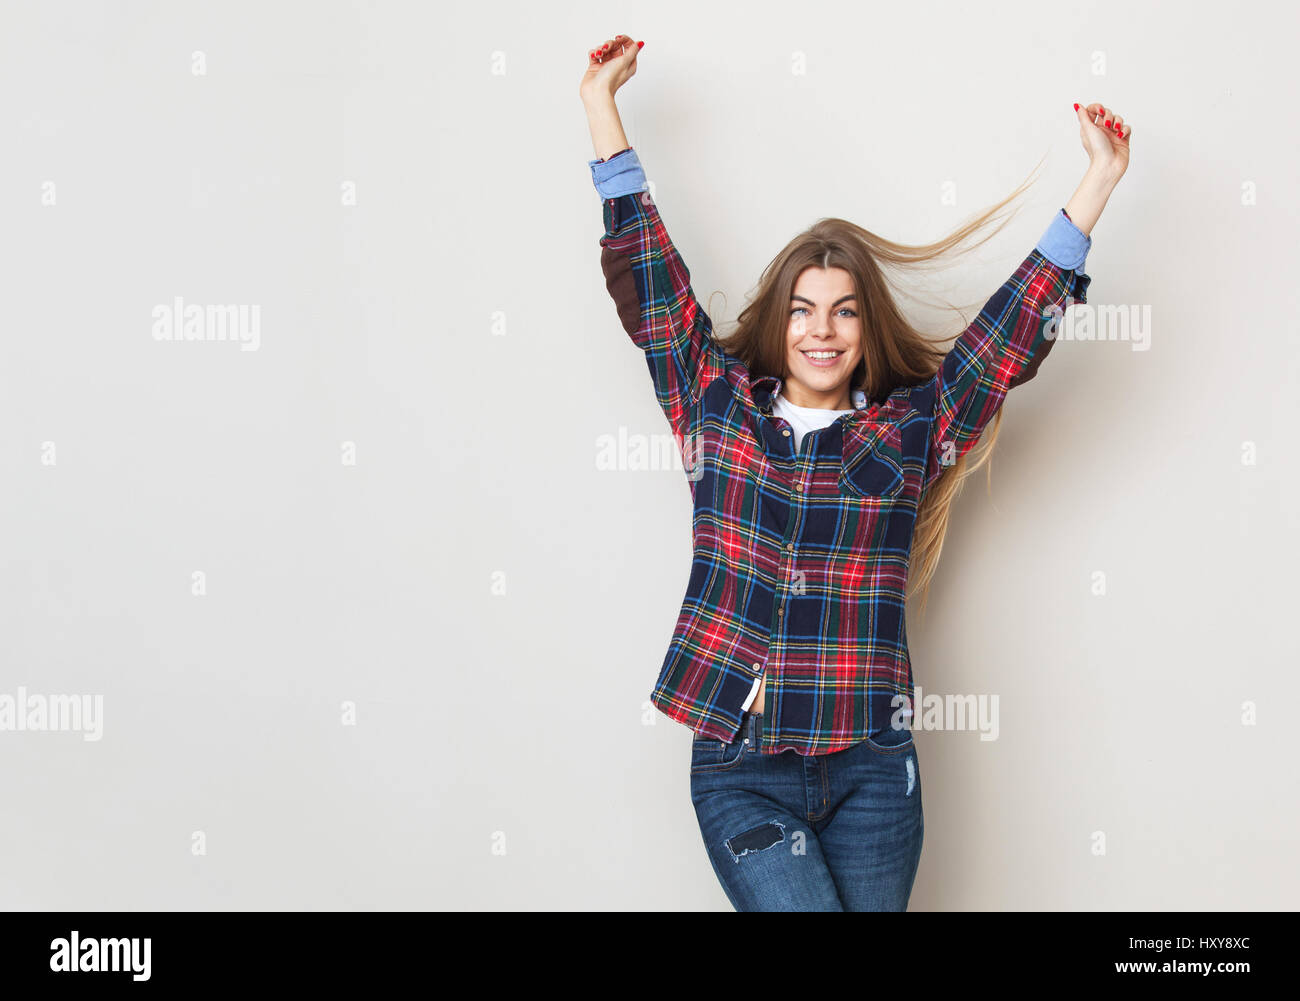 Studio portrait of happy young woman posing chemise à carreaux contre mur. Banque D'Images